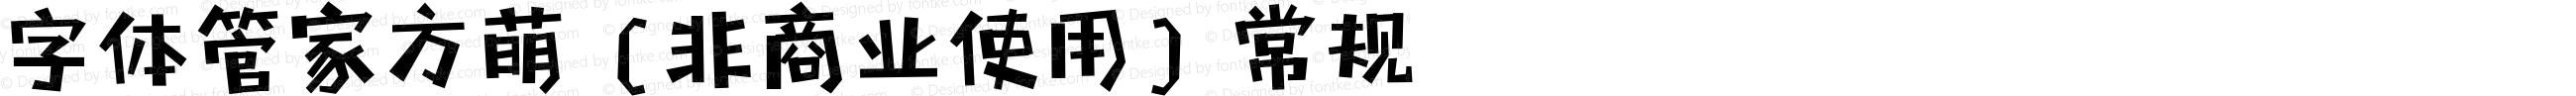 字体管家方萌 (非商业使用)